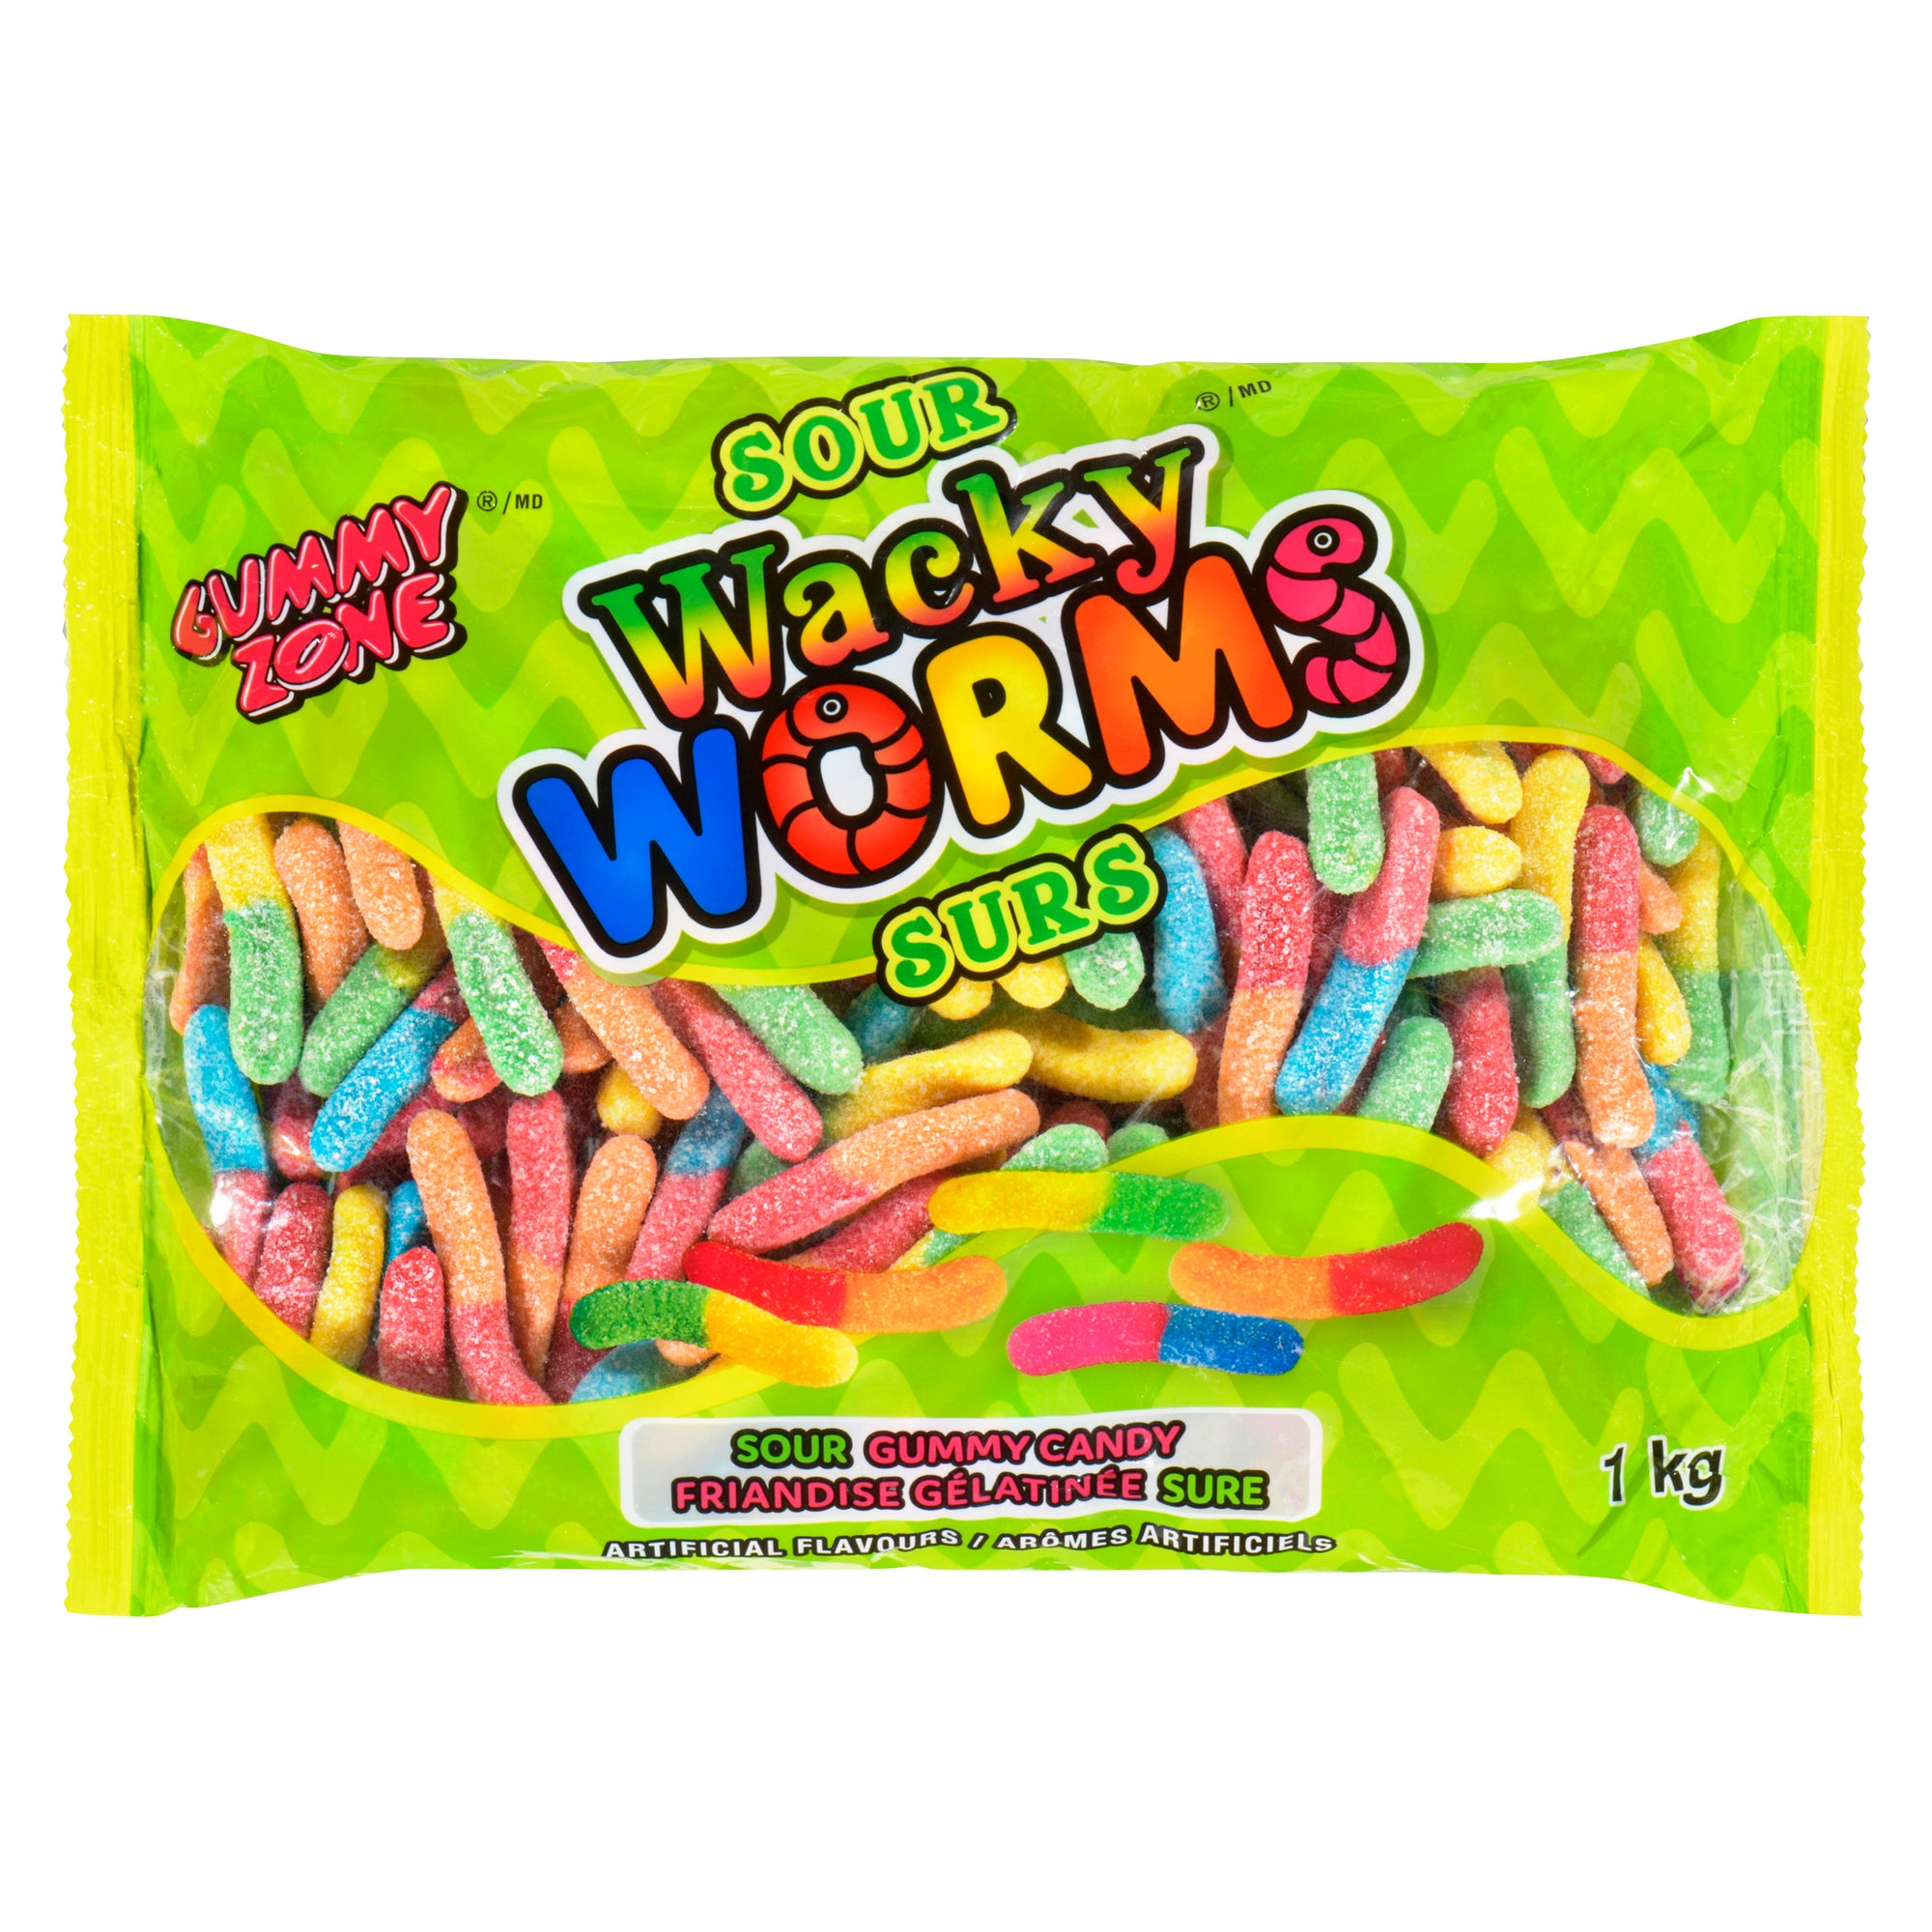 Gummy Zone Wacky Worms Sour Gummy Candy, 1-kg